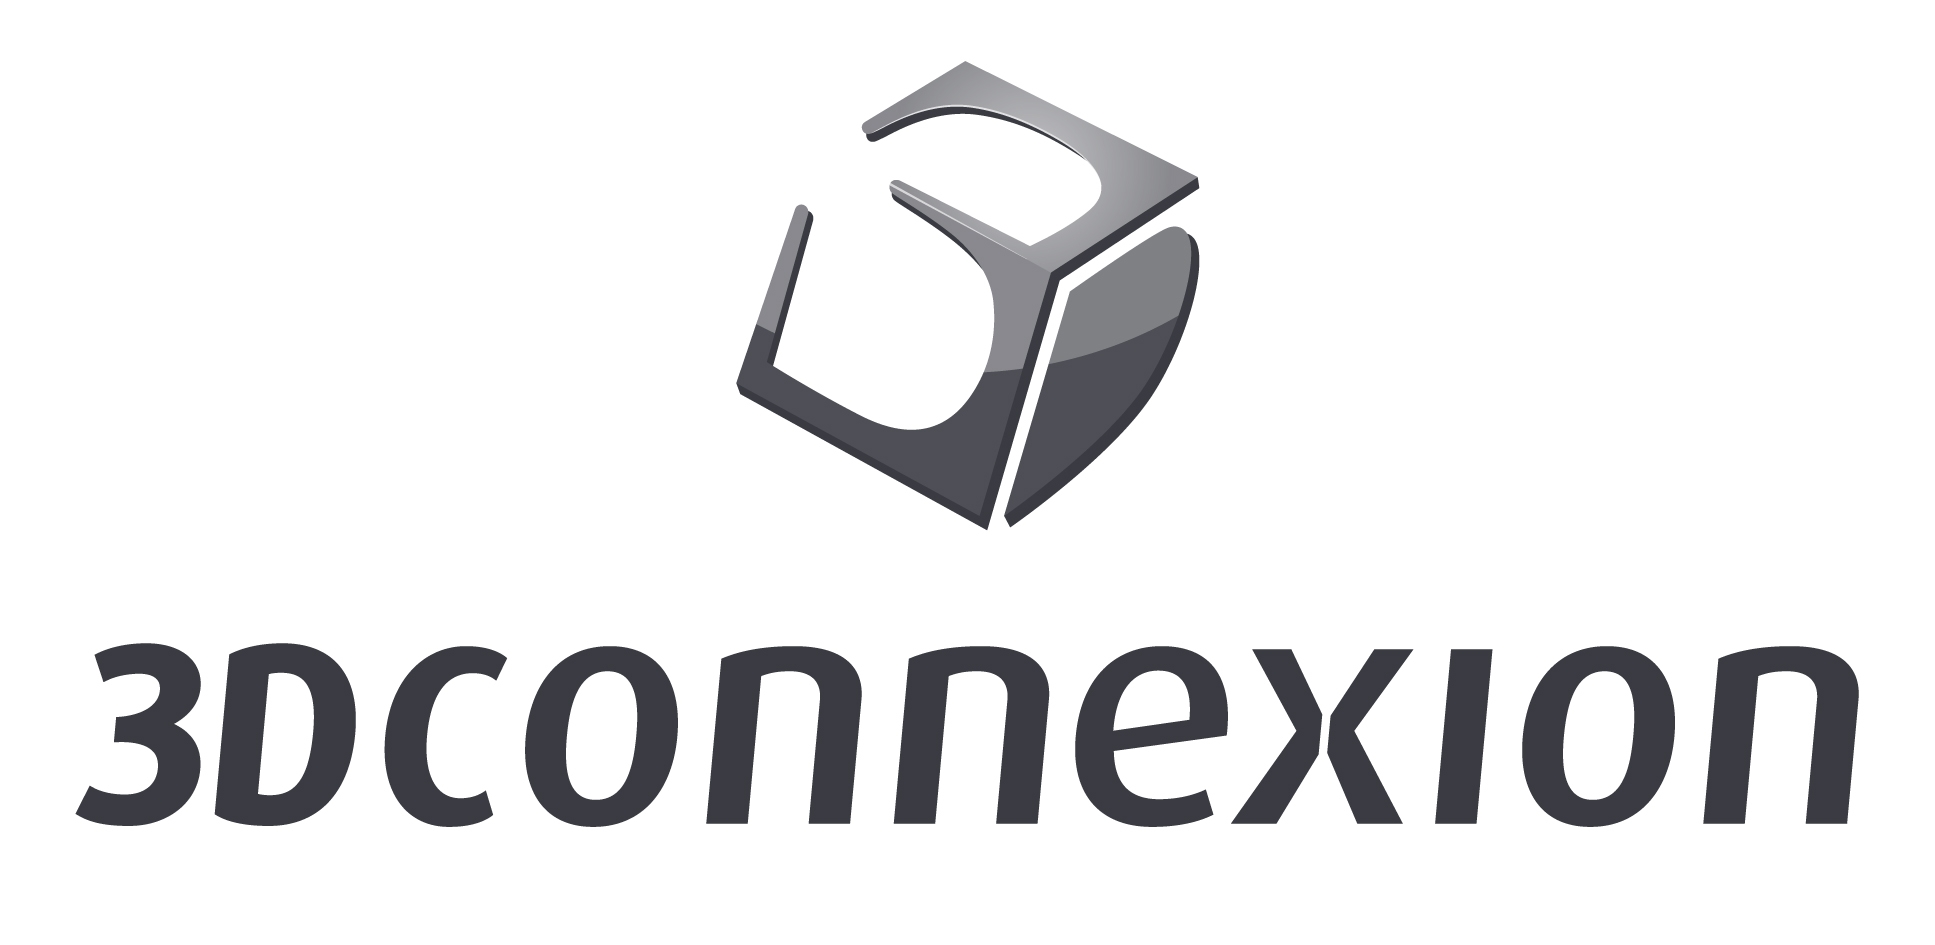 3Dconnexion Logo photo - 1